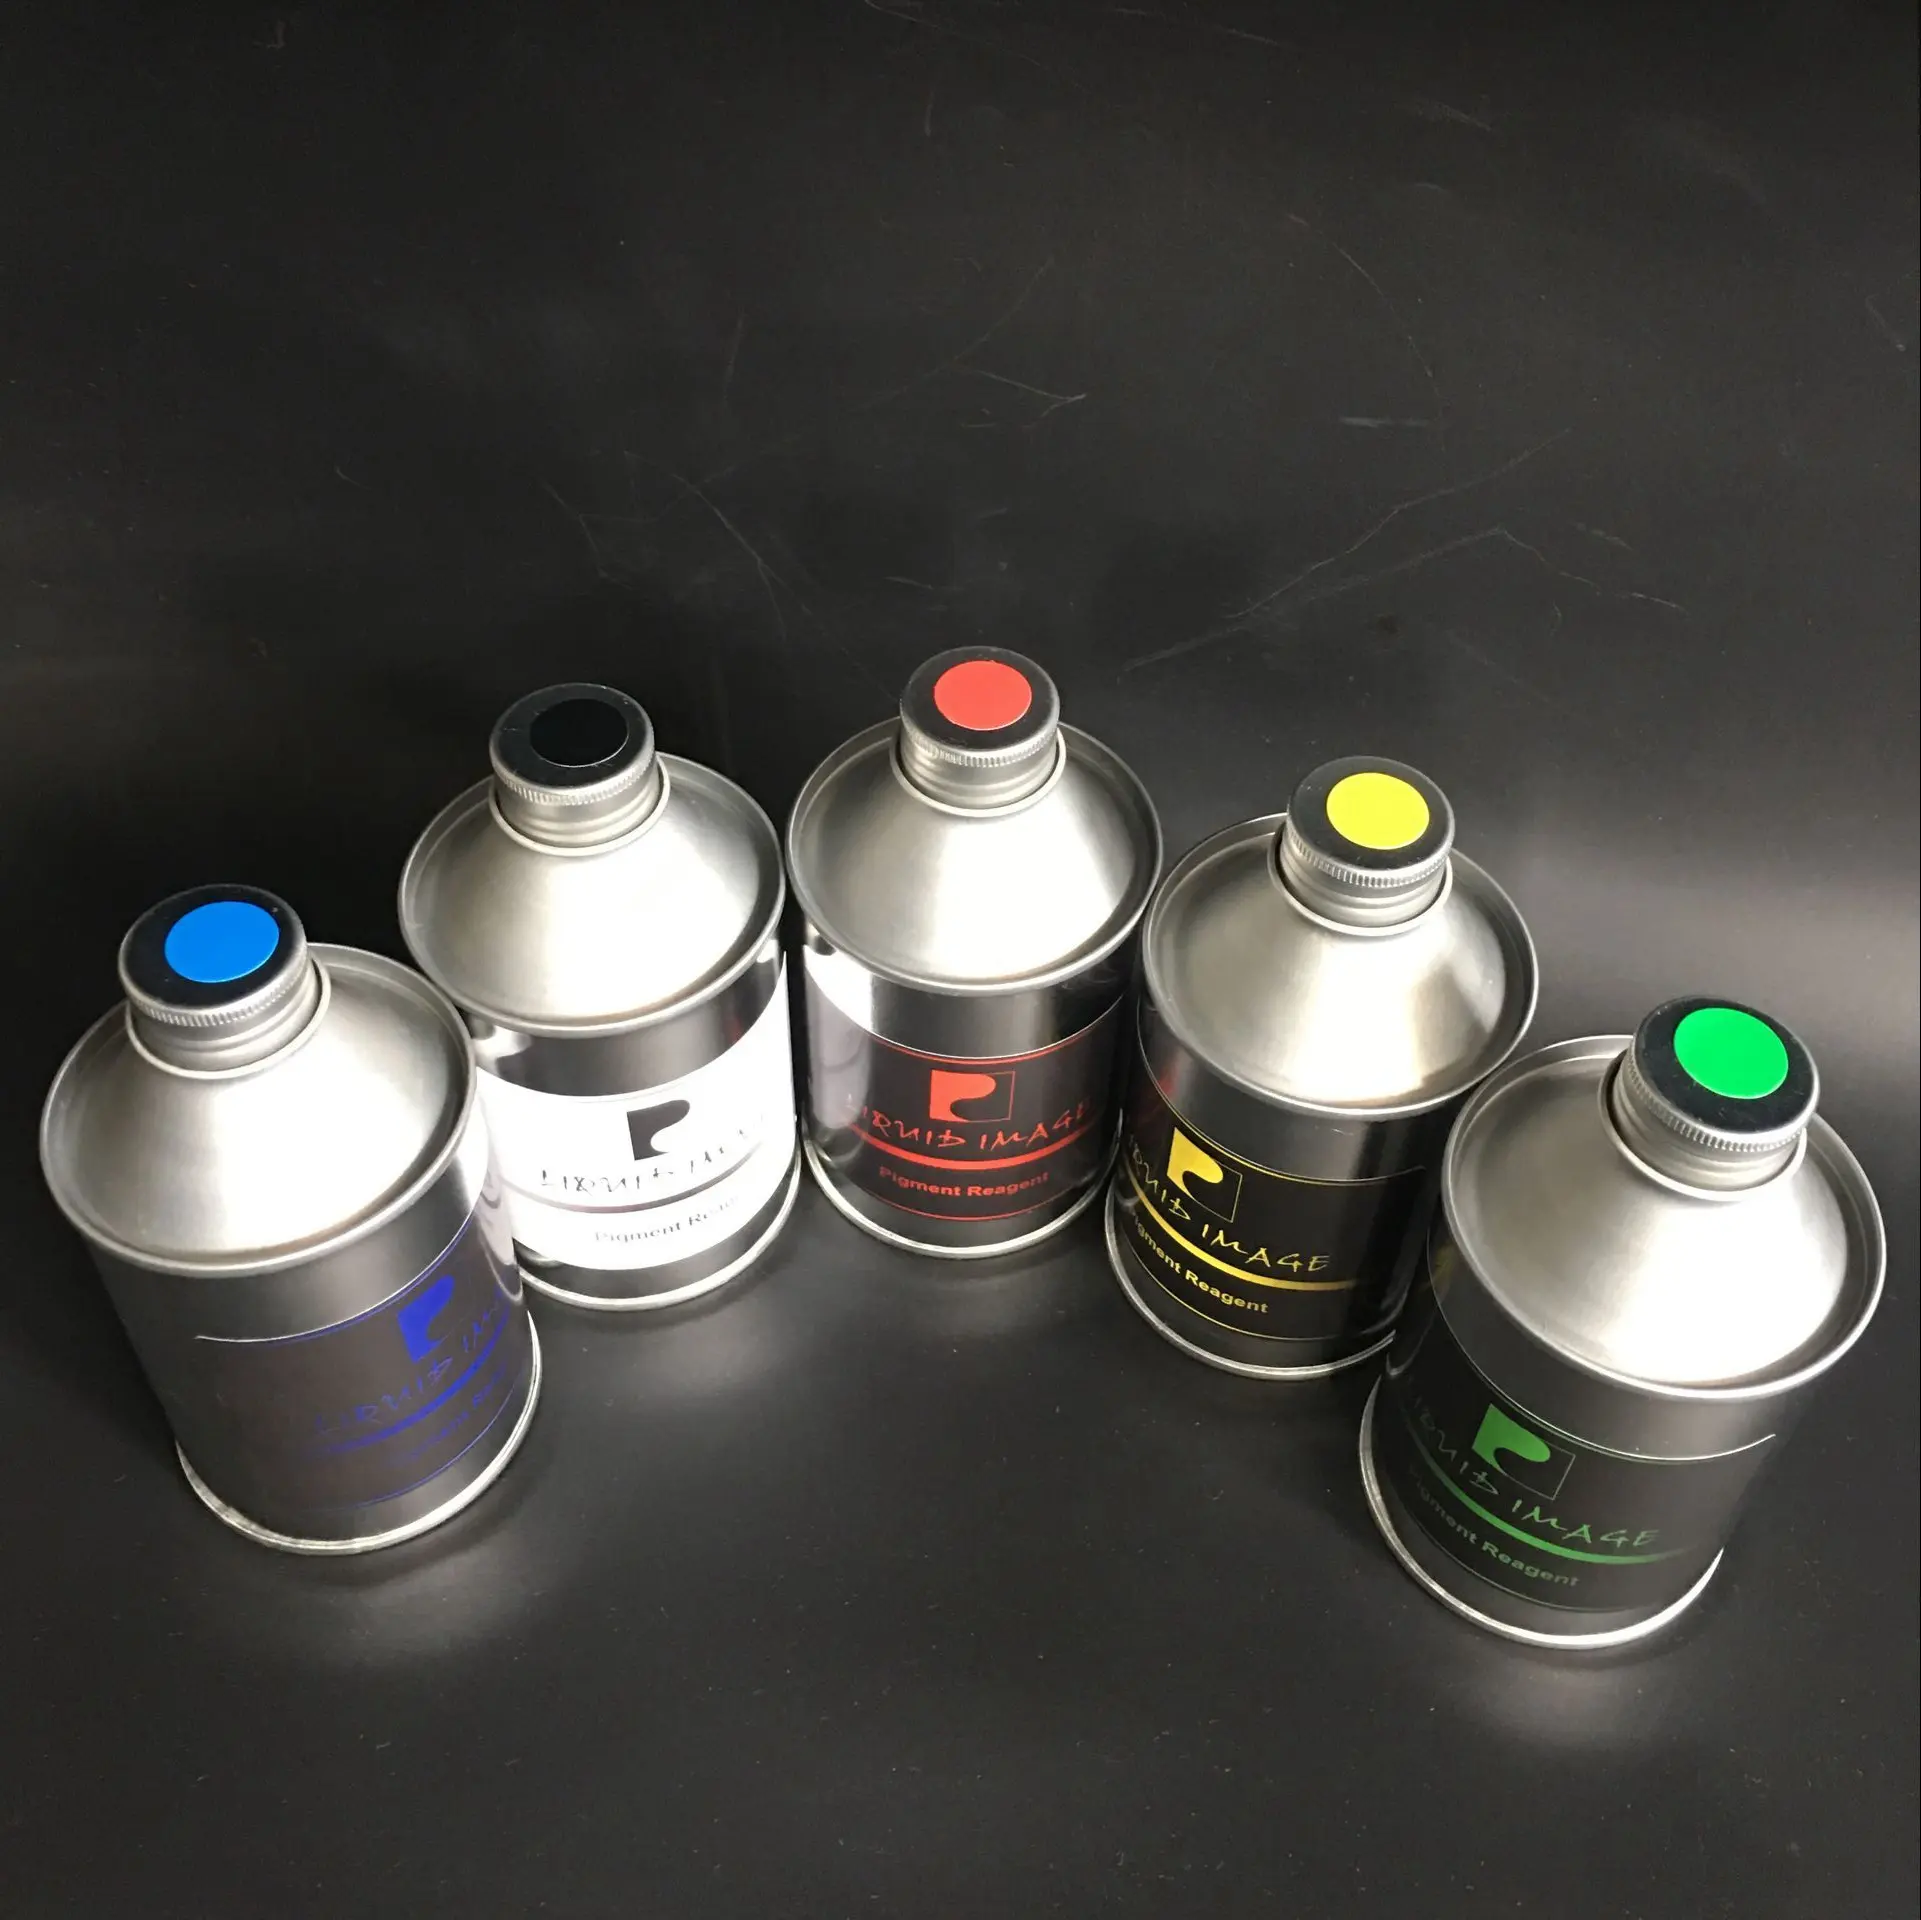 Reparador de pigmento colorido para máquina de revestimento, kit para pintura cromada em plástico metálico, prata, ouro, cobre, spray